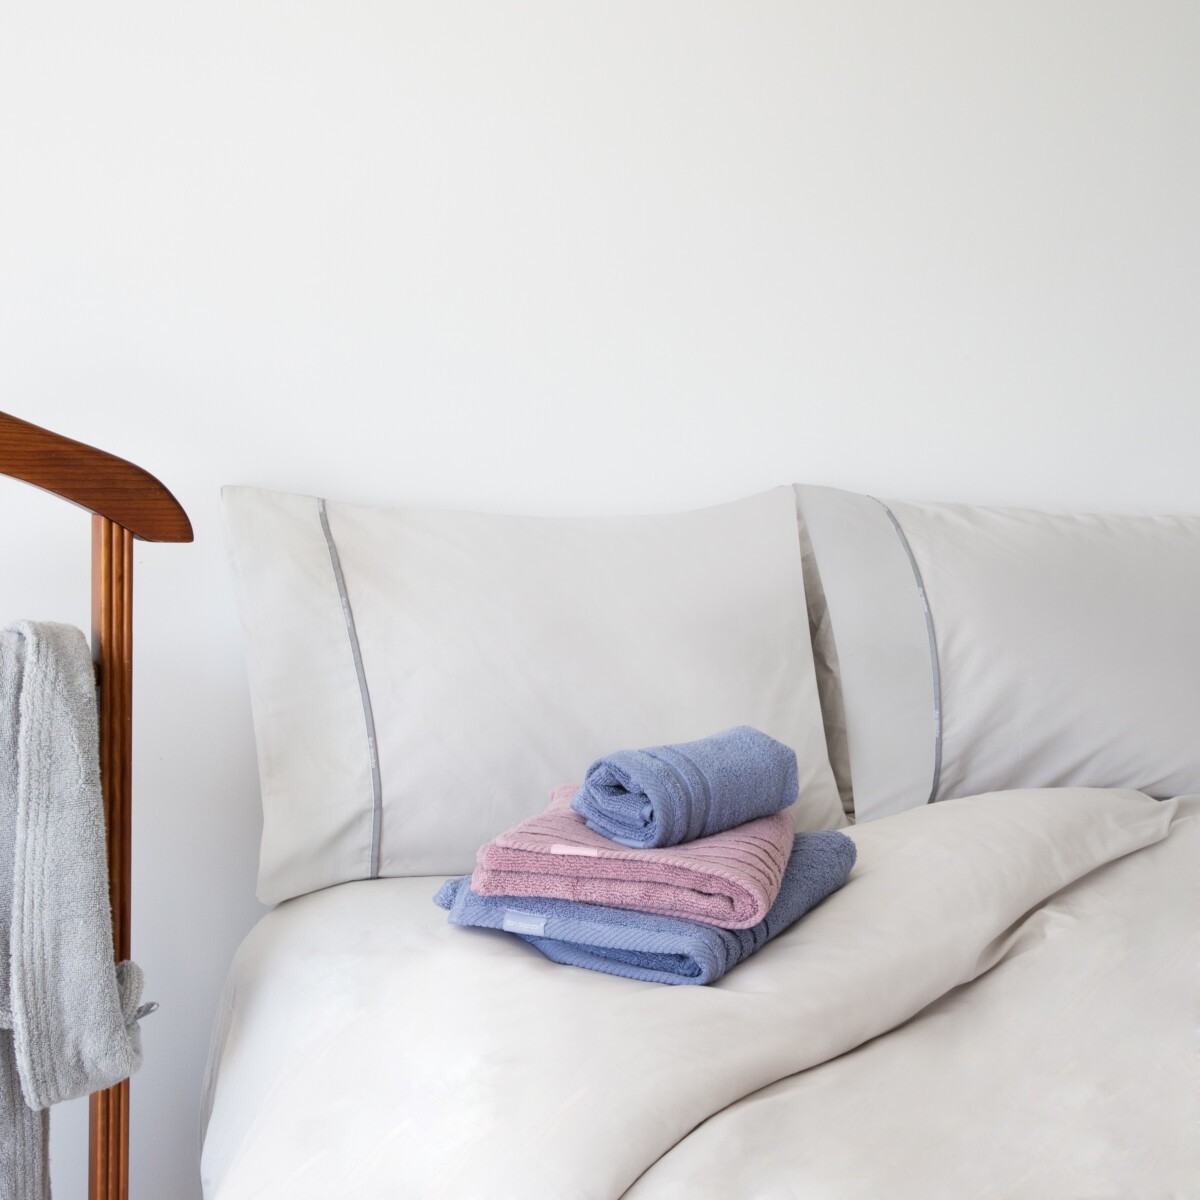 Legado flaco Húmedo LlarTExtil® – La ropa de cama favorita de internet | delikatissen